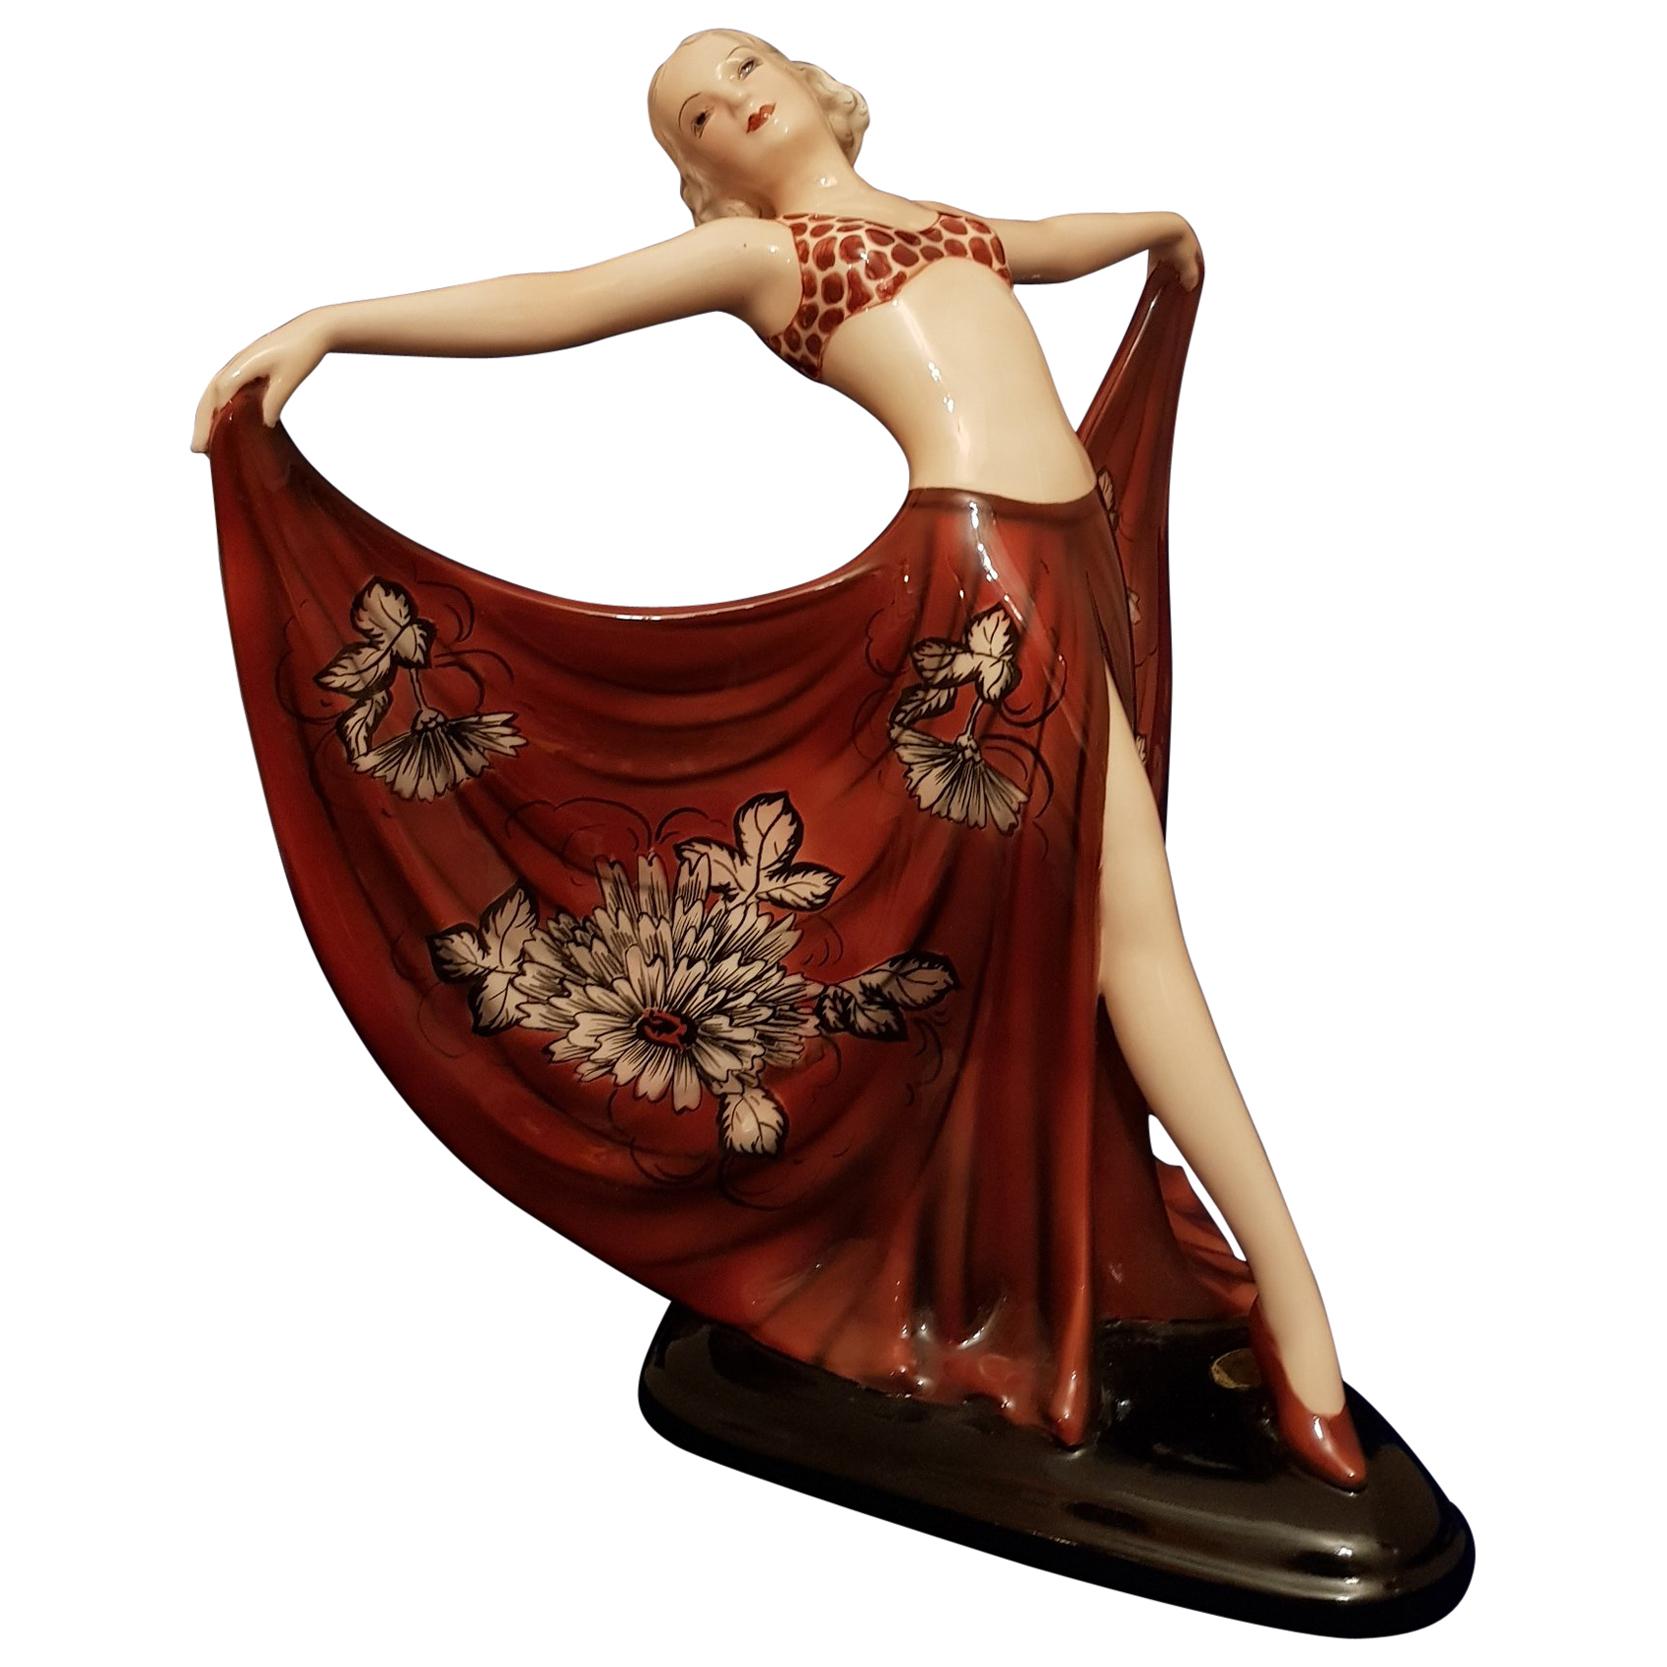 Goldscheider- Lorenzl Josef, Ceramic Dancer Sculpture Art Deco Germany, 1936